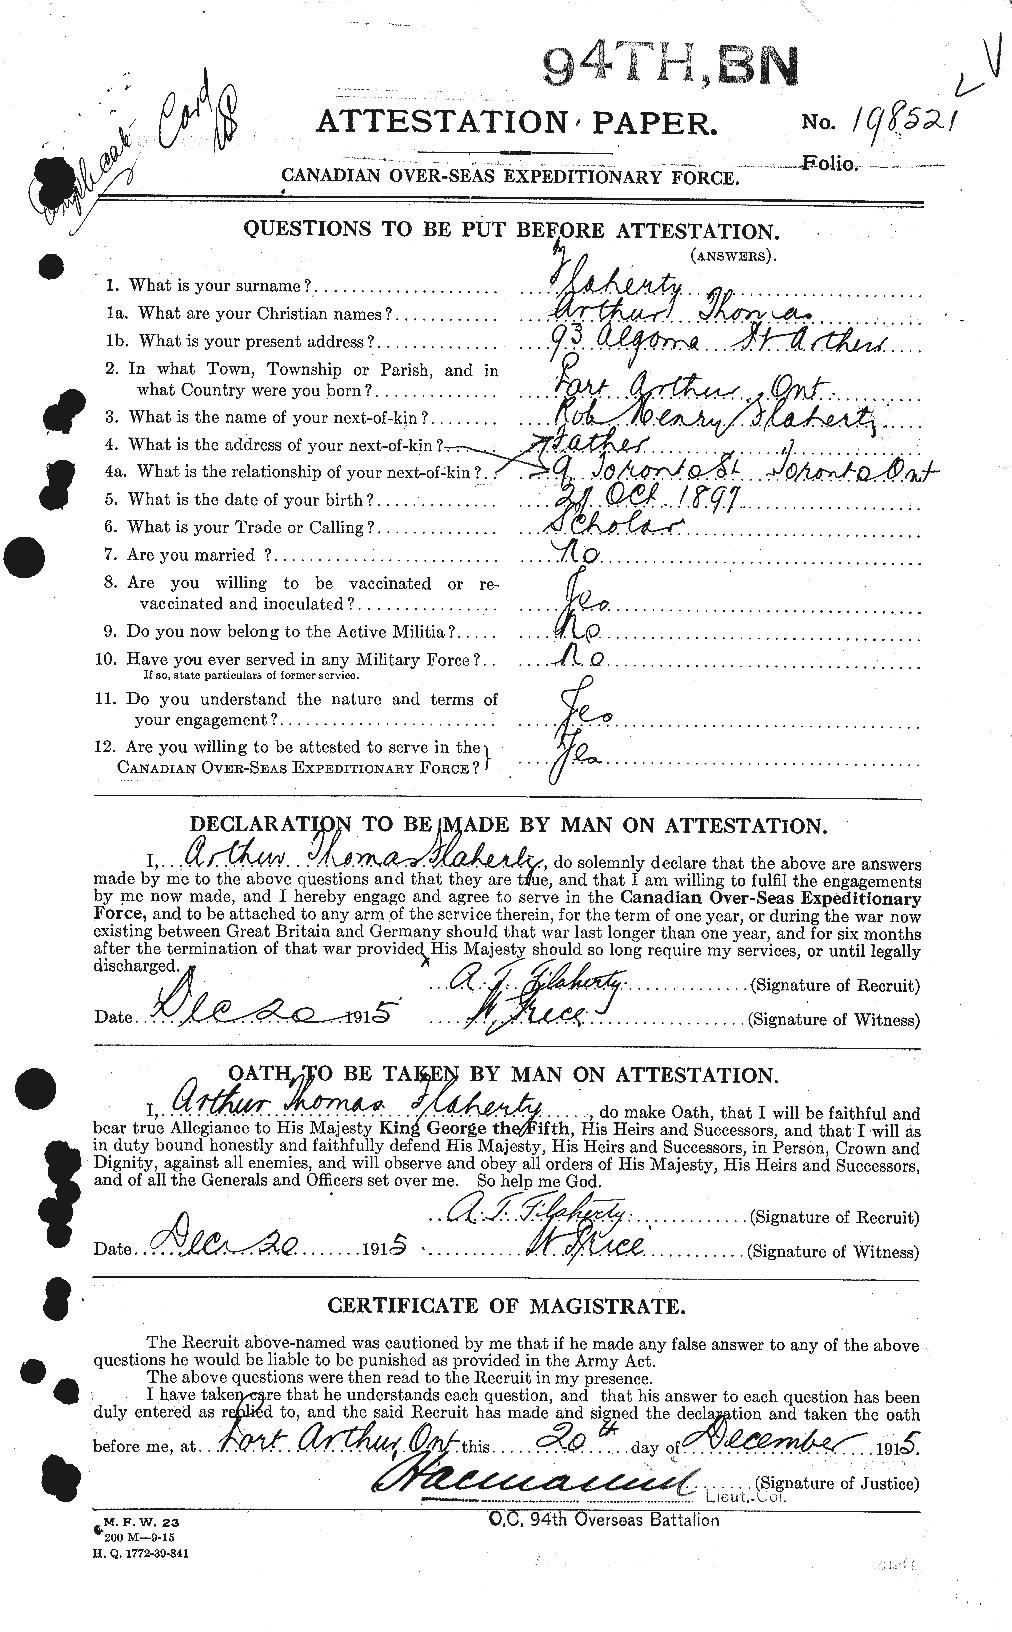 Dossiers du Personnel de la Première Guerre mondiale - CEC 323344a